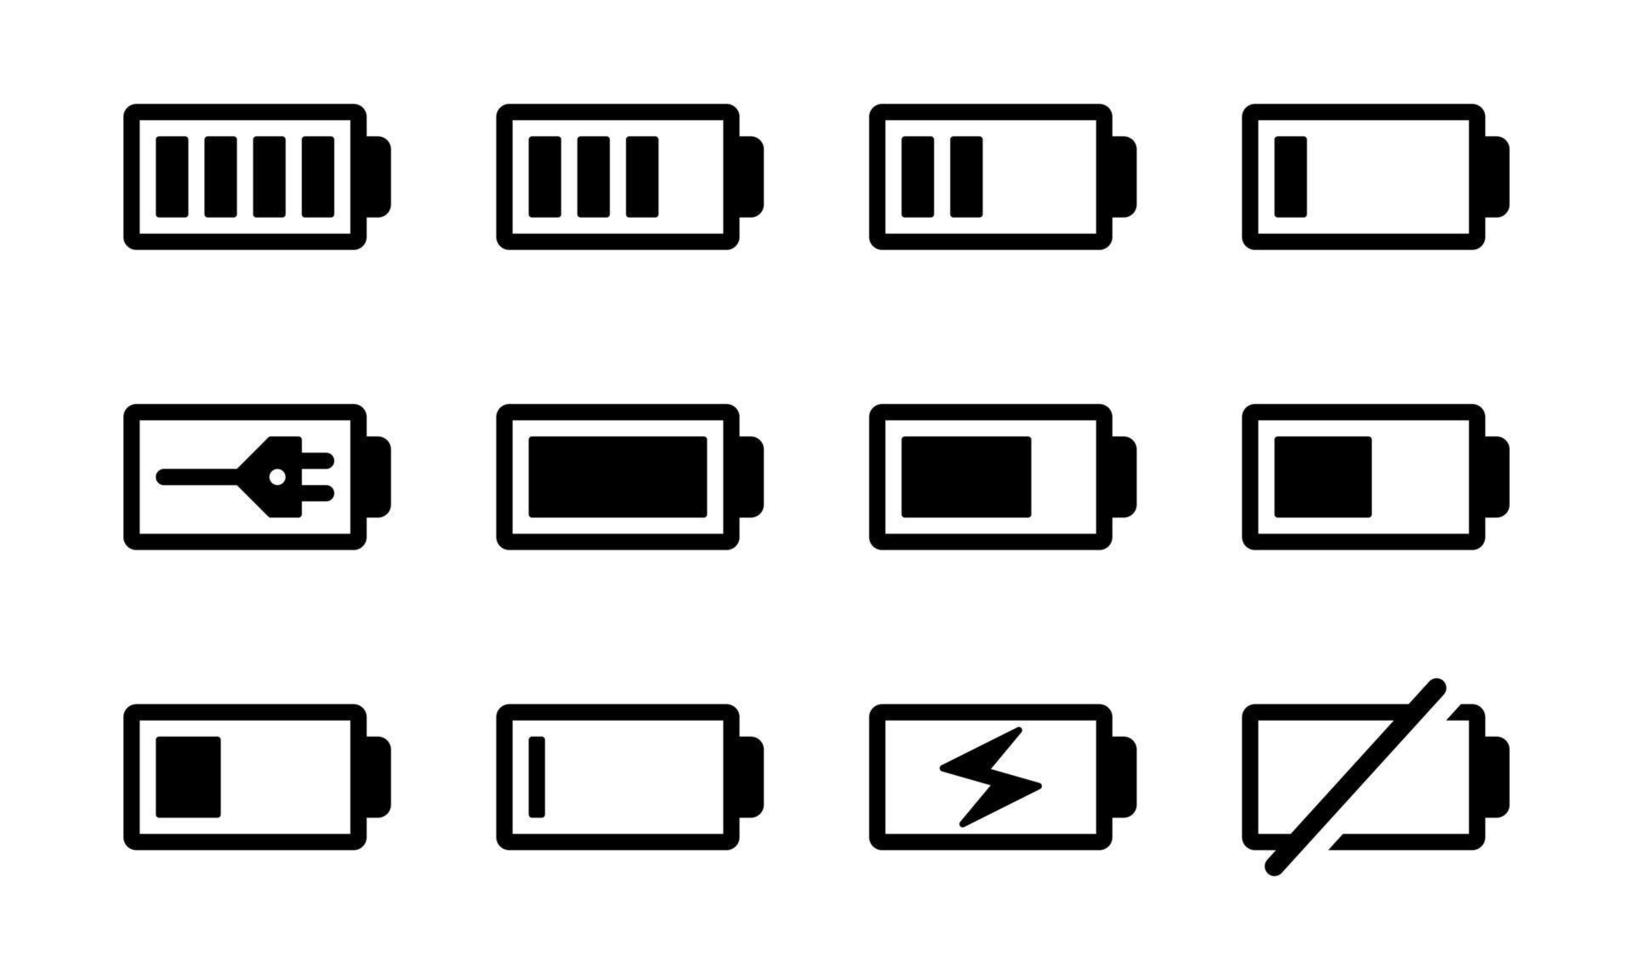 illustrazione vettoriale piatta del set di icone del misuratore di batteria. adatto per l'elemento di design dell'indicatore della batteria, l'archiviazione dell'alimentazione dello smartphone e la notifica di ricarica della batteria.